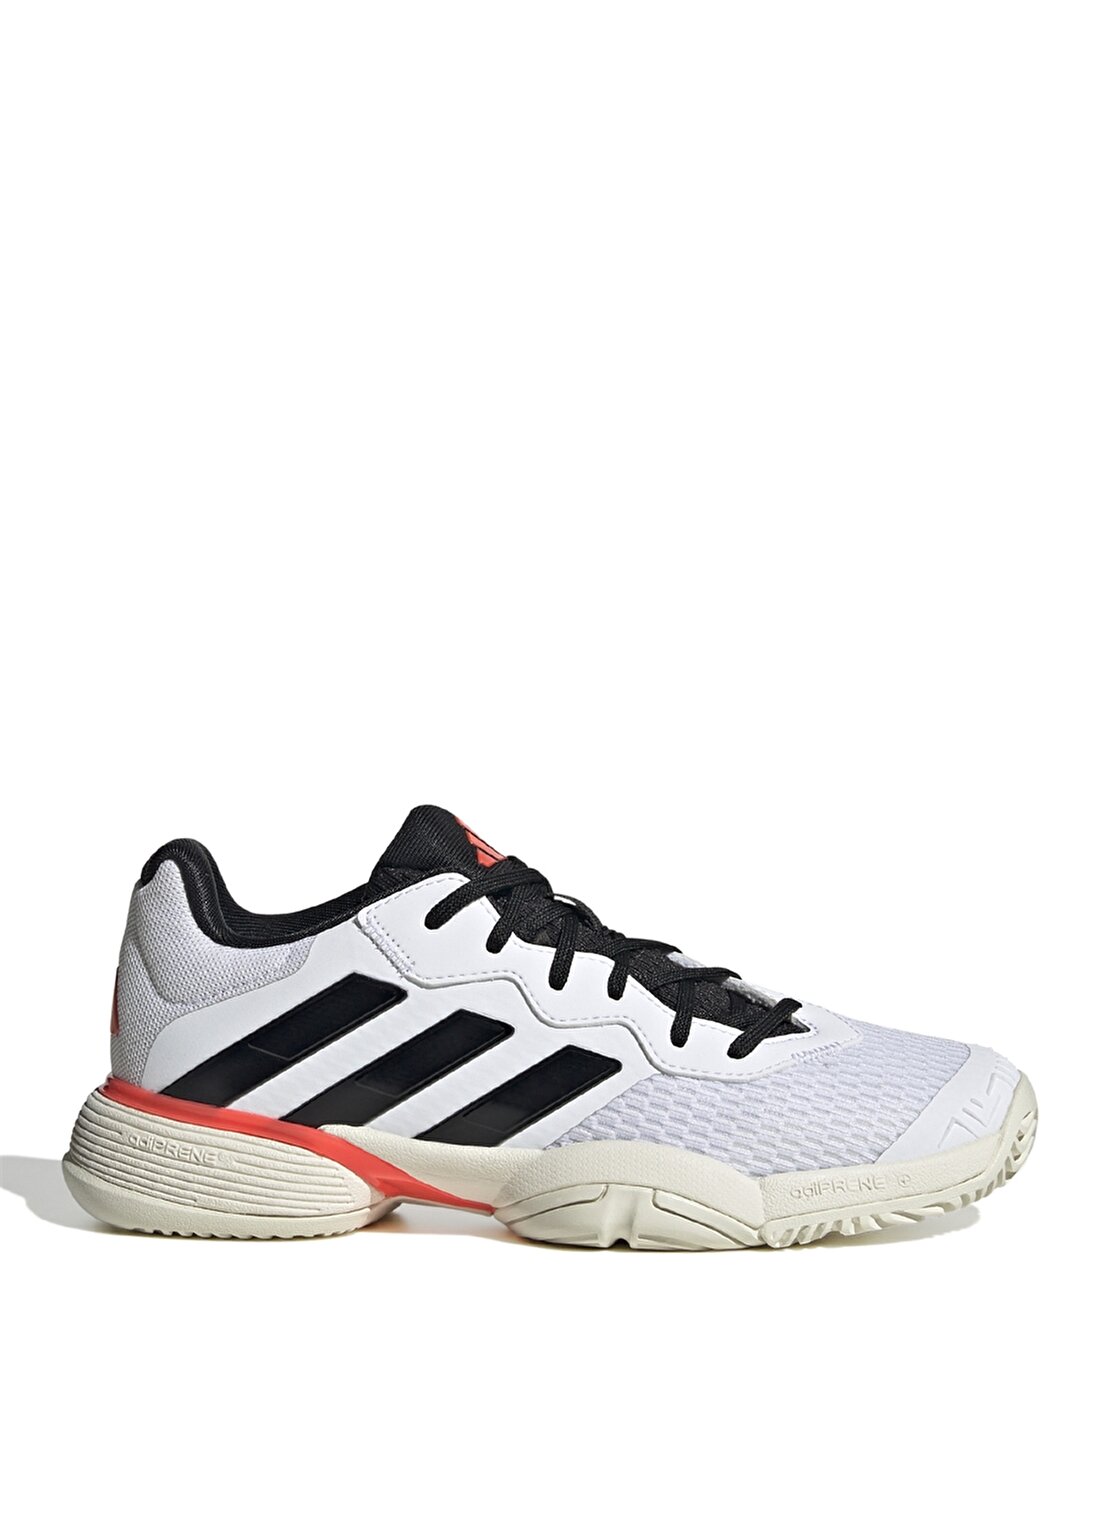 Adidas Beyaz Erkek Tenis Ayakkabısı IF0451-Barricade K